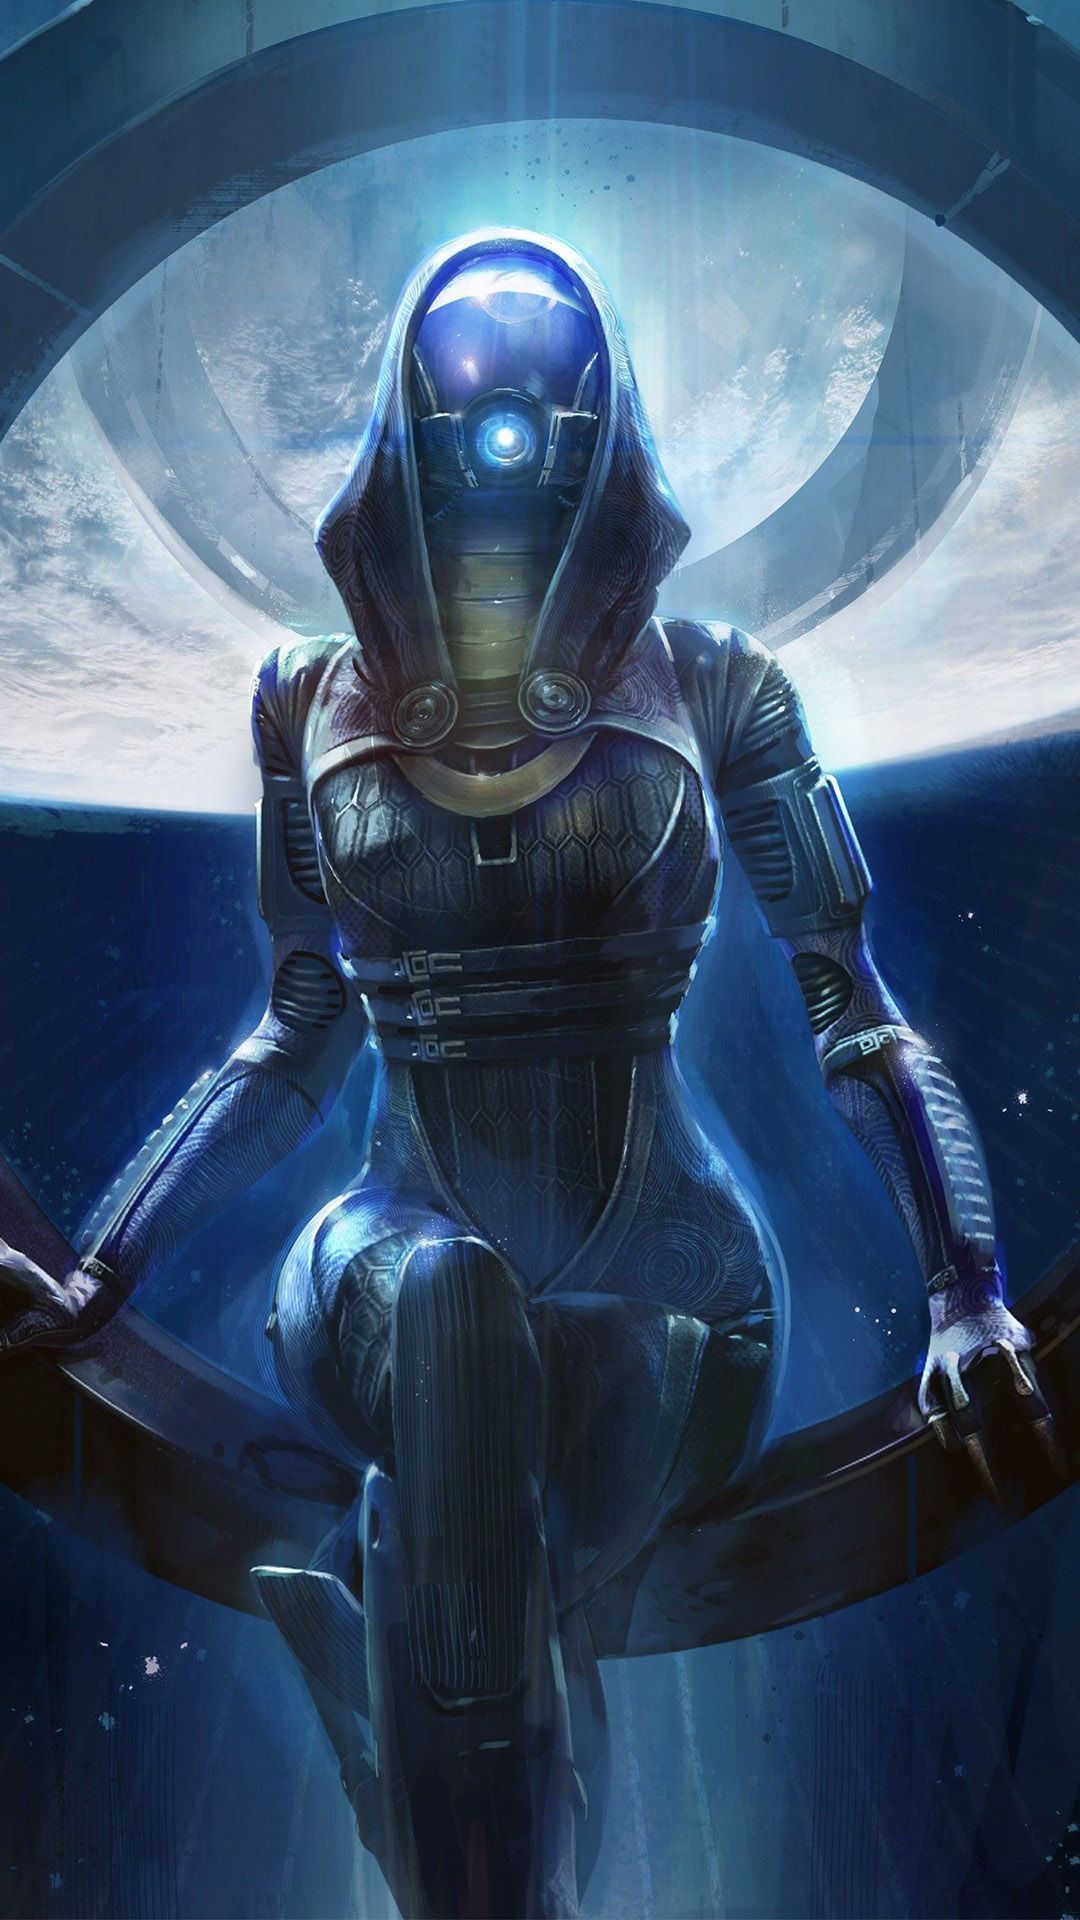 Tali'Zorah nar Rayya - Mass Effect Mobile Wallpaper 7898